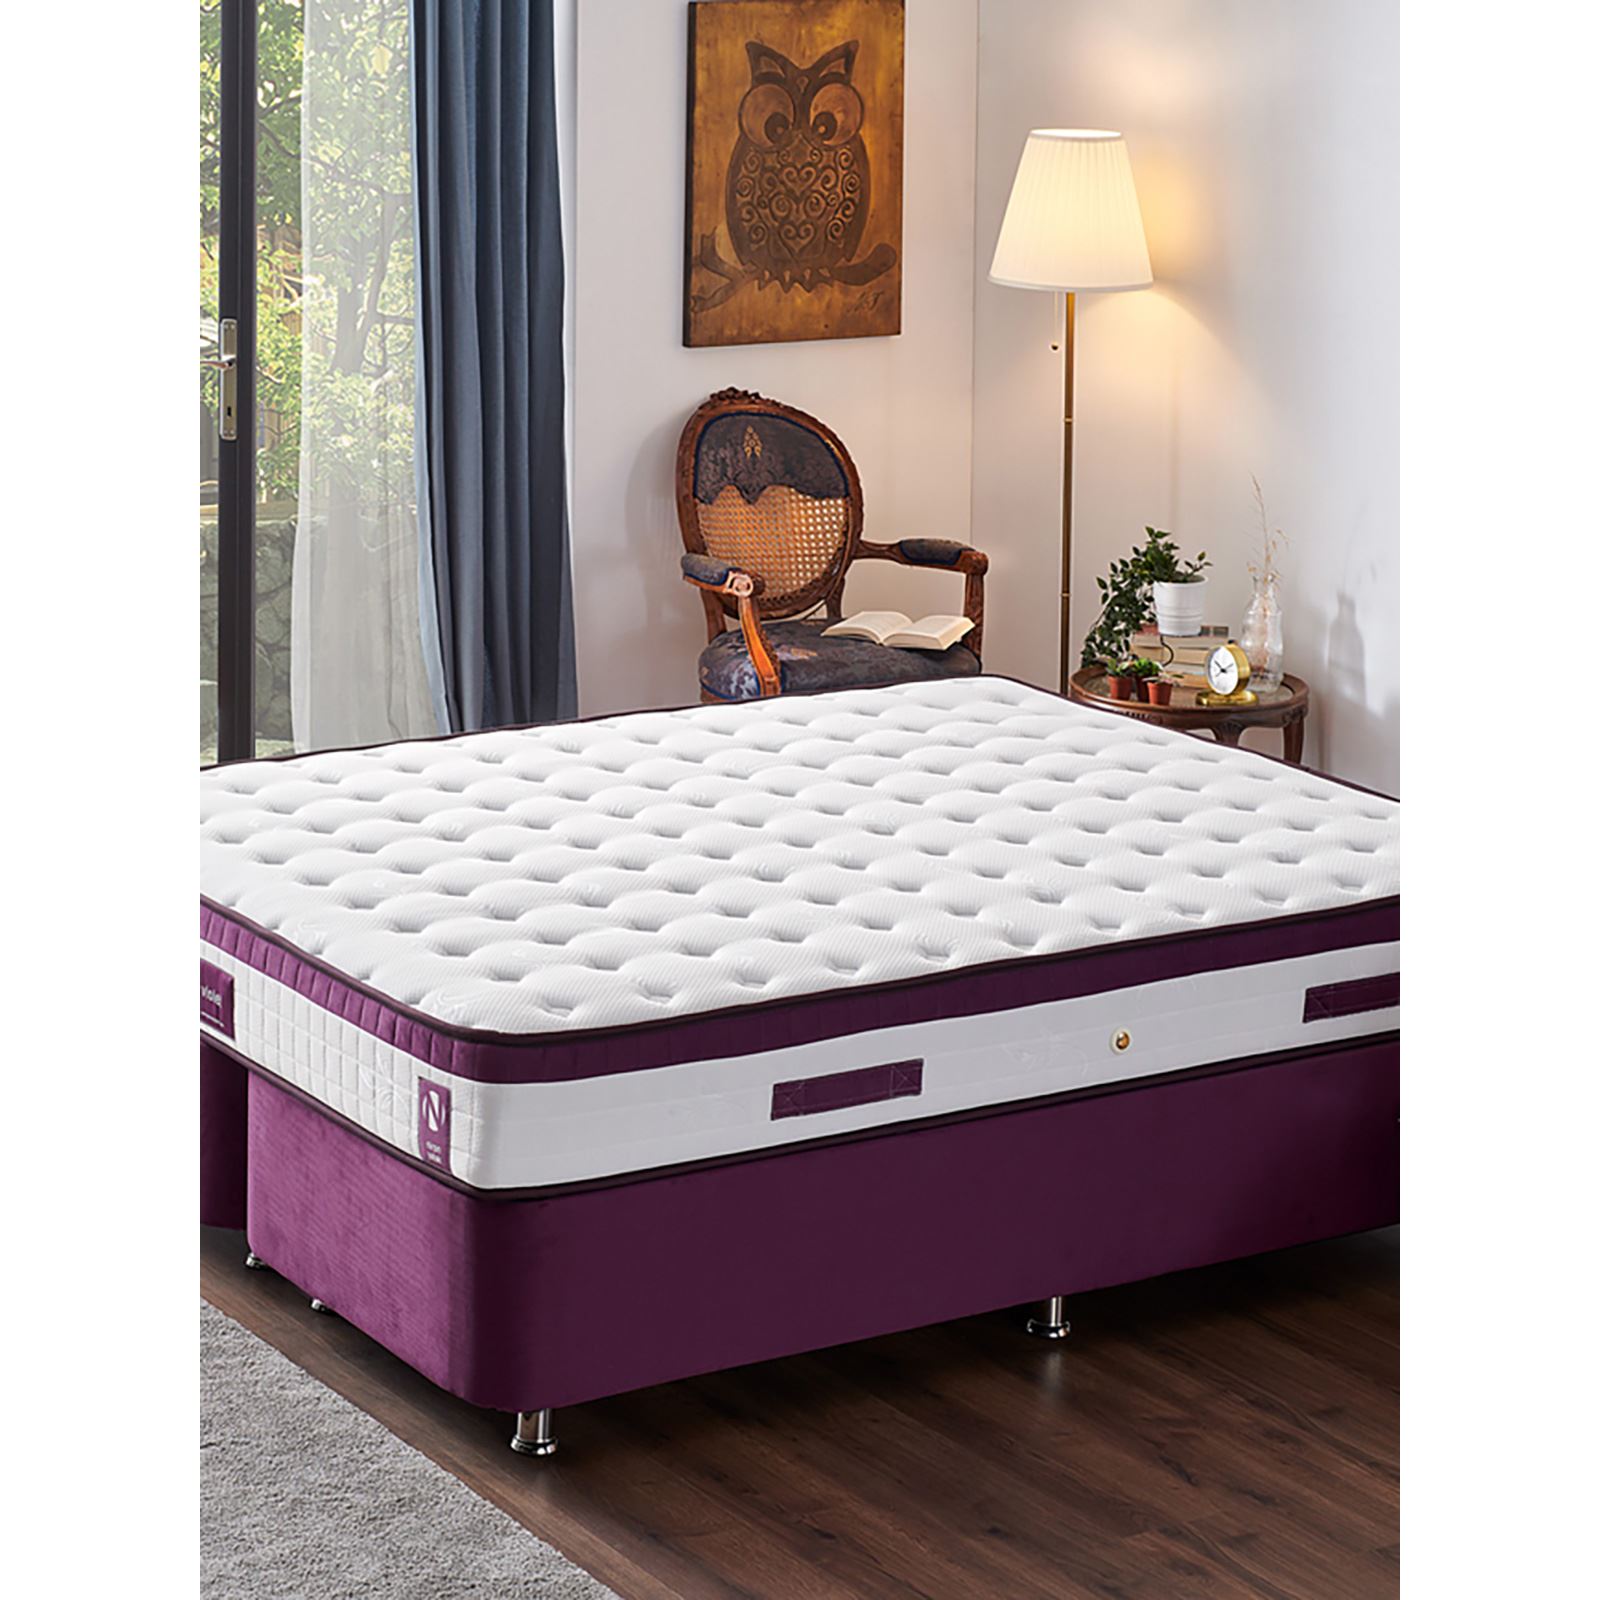 Niron Violet Yatak Seti 160x200 cm Çift Kişilik Yatak Baza Başlık Takımı Orta Sert Yatak Baza ve Başlığı Mor